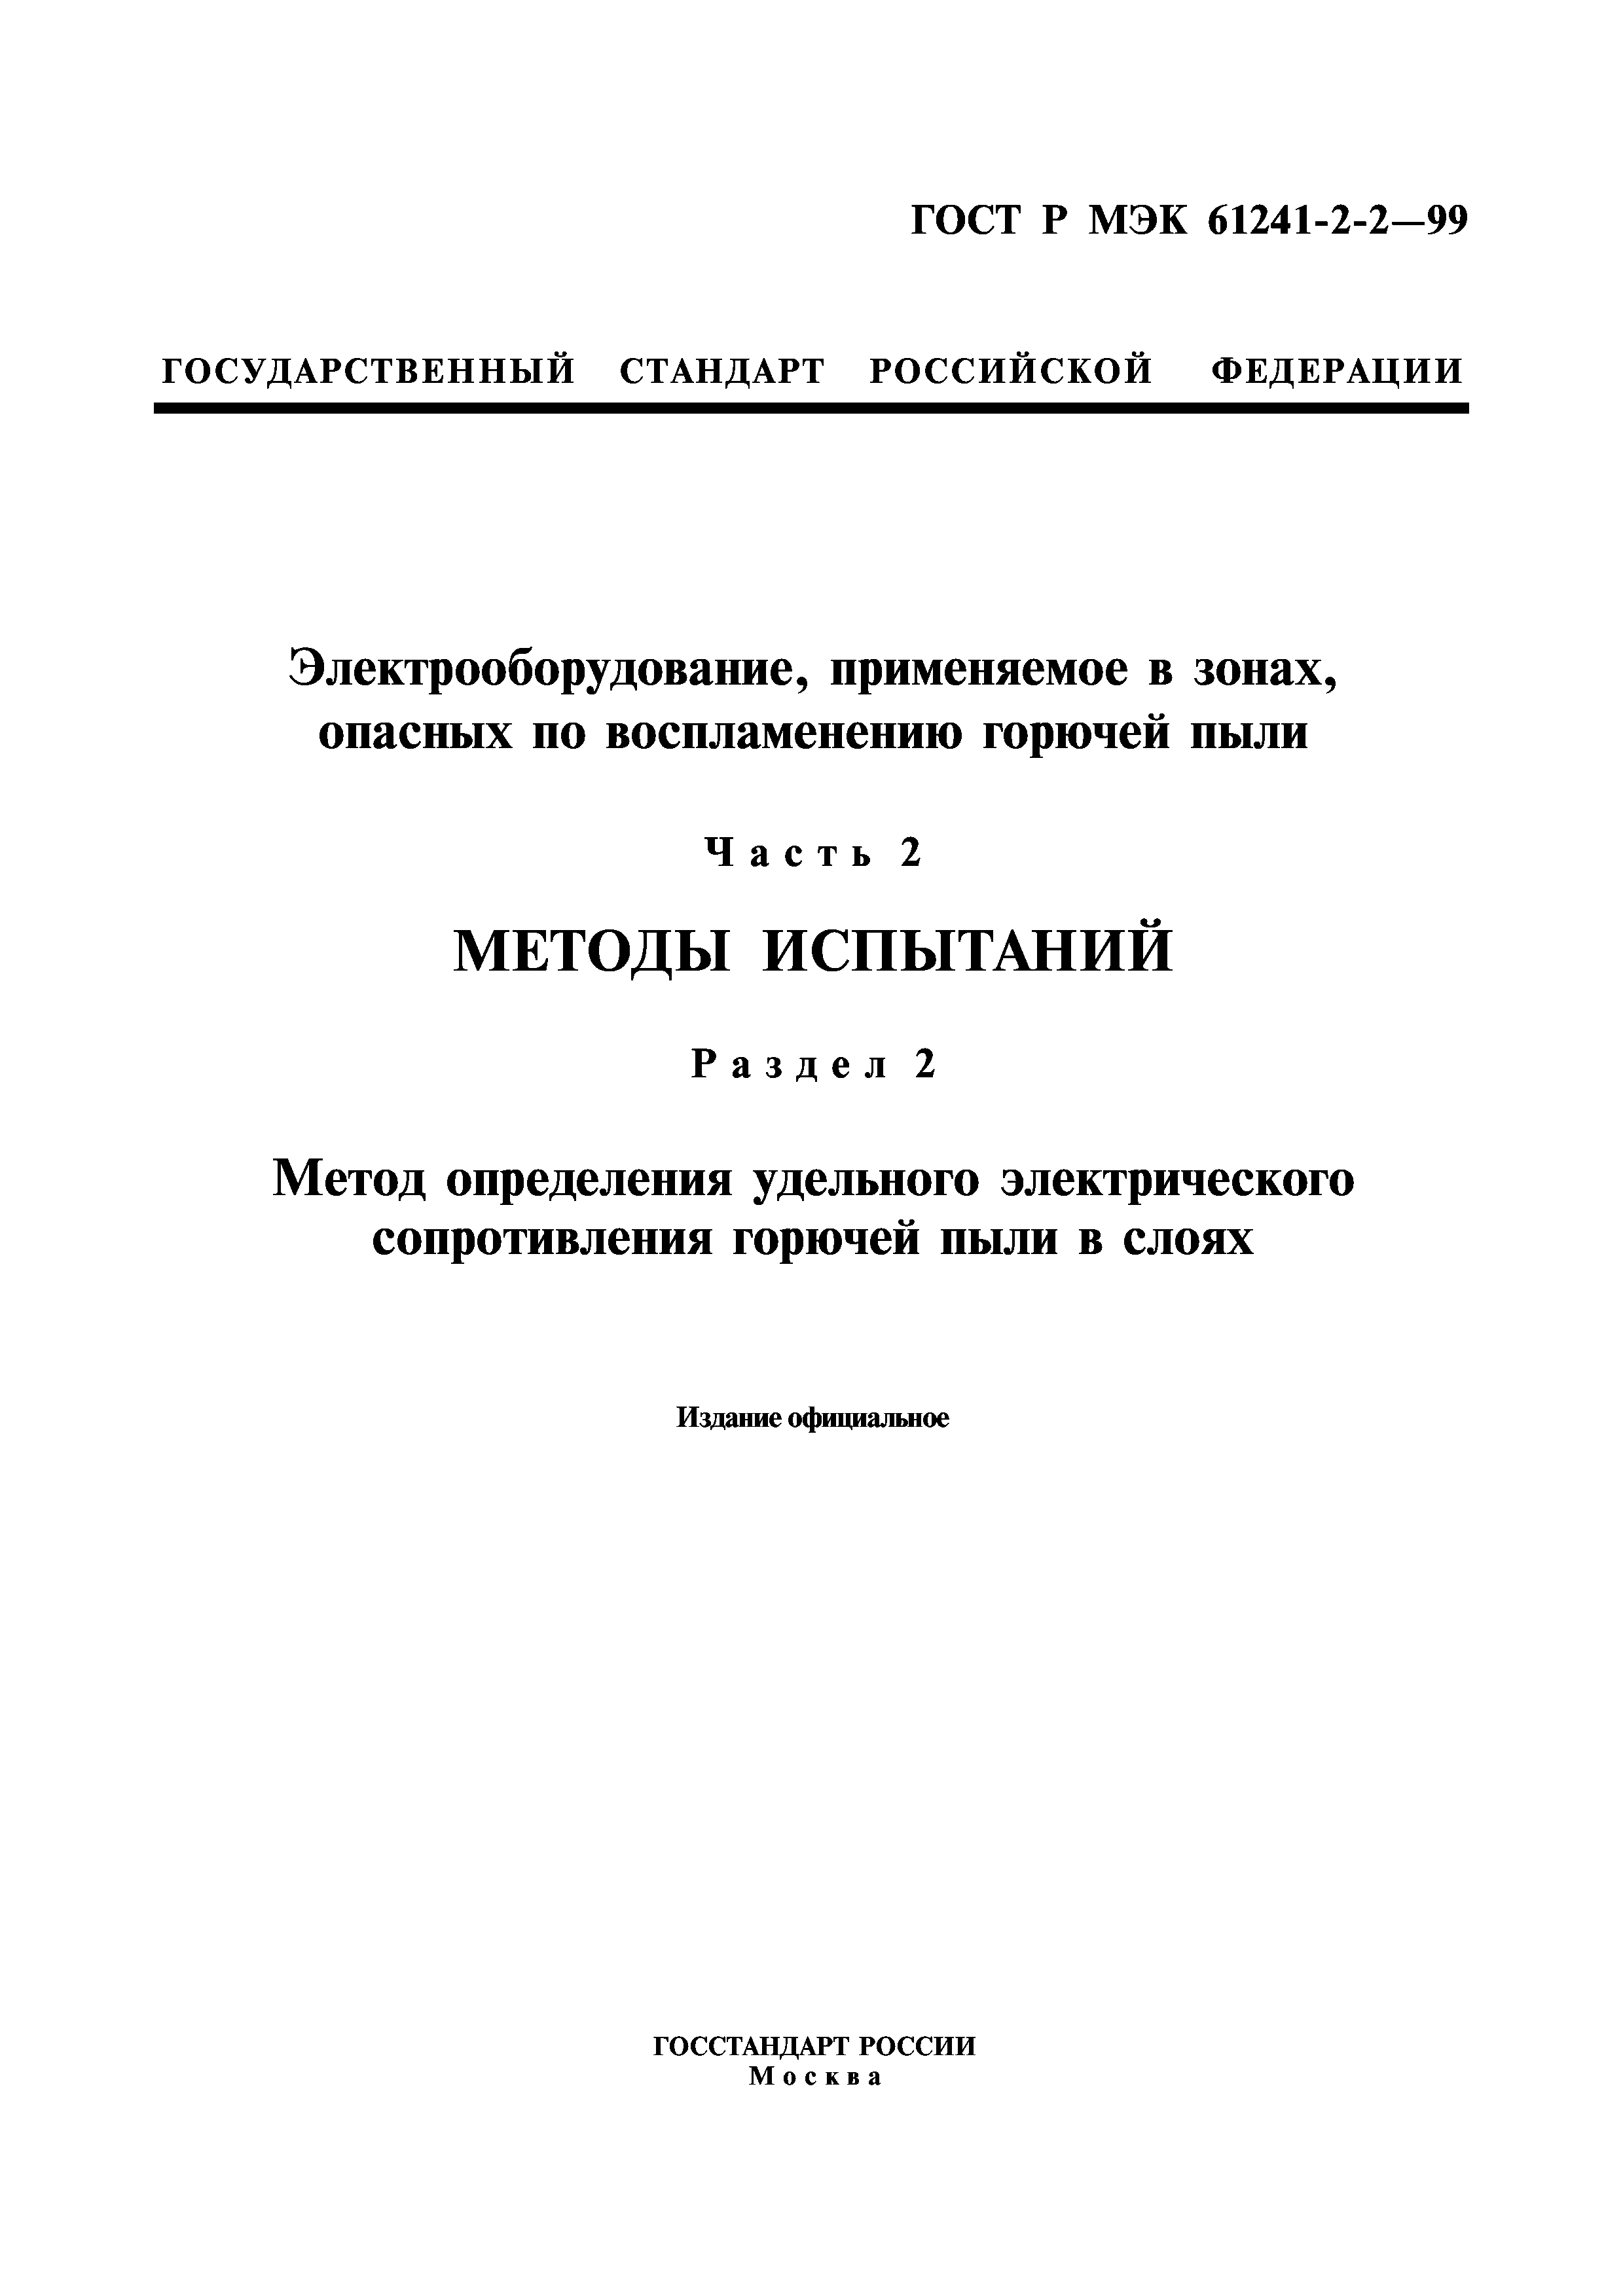 ГОСТ Р МЭК 61241-2-2-99